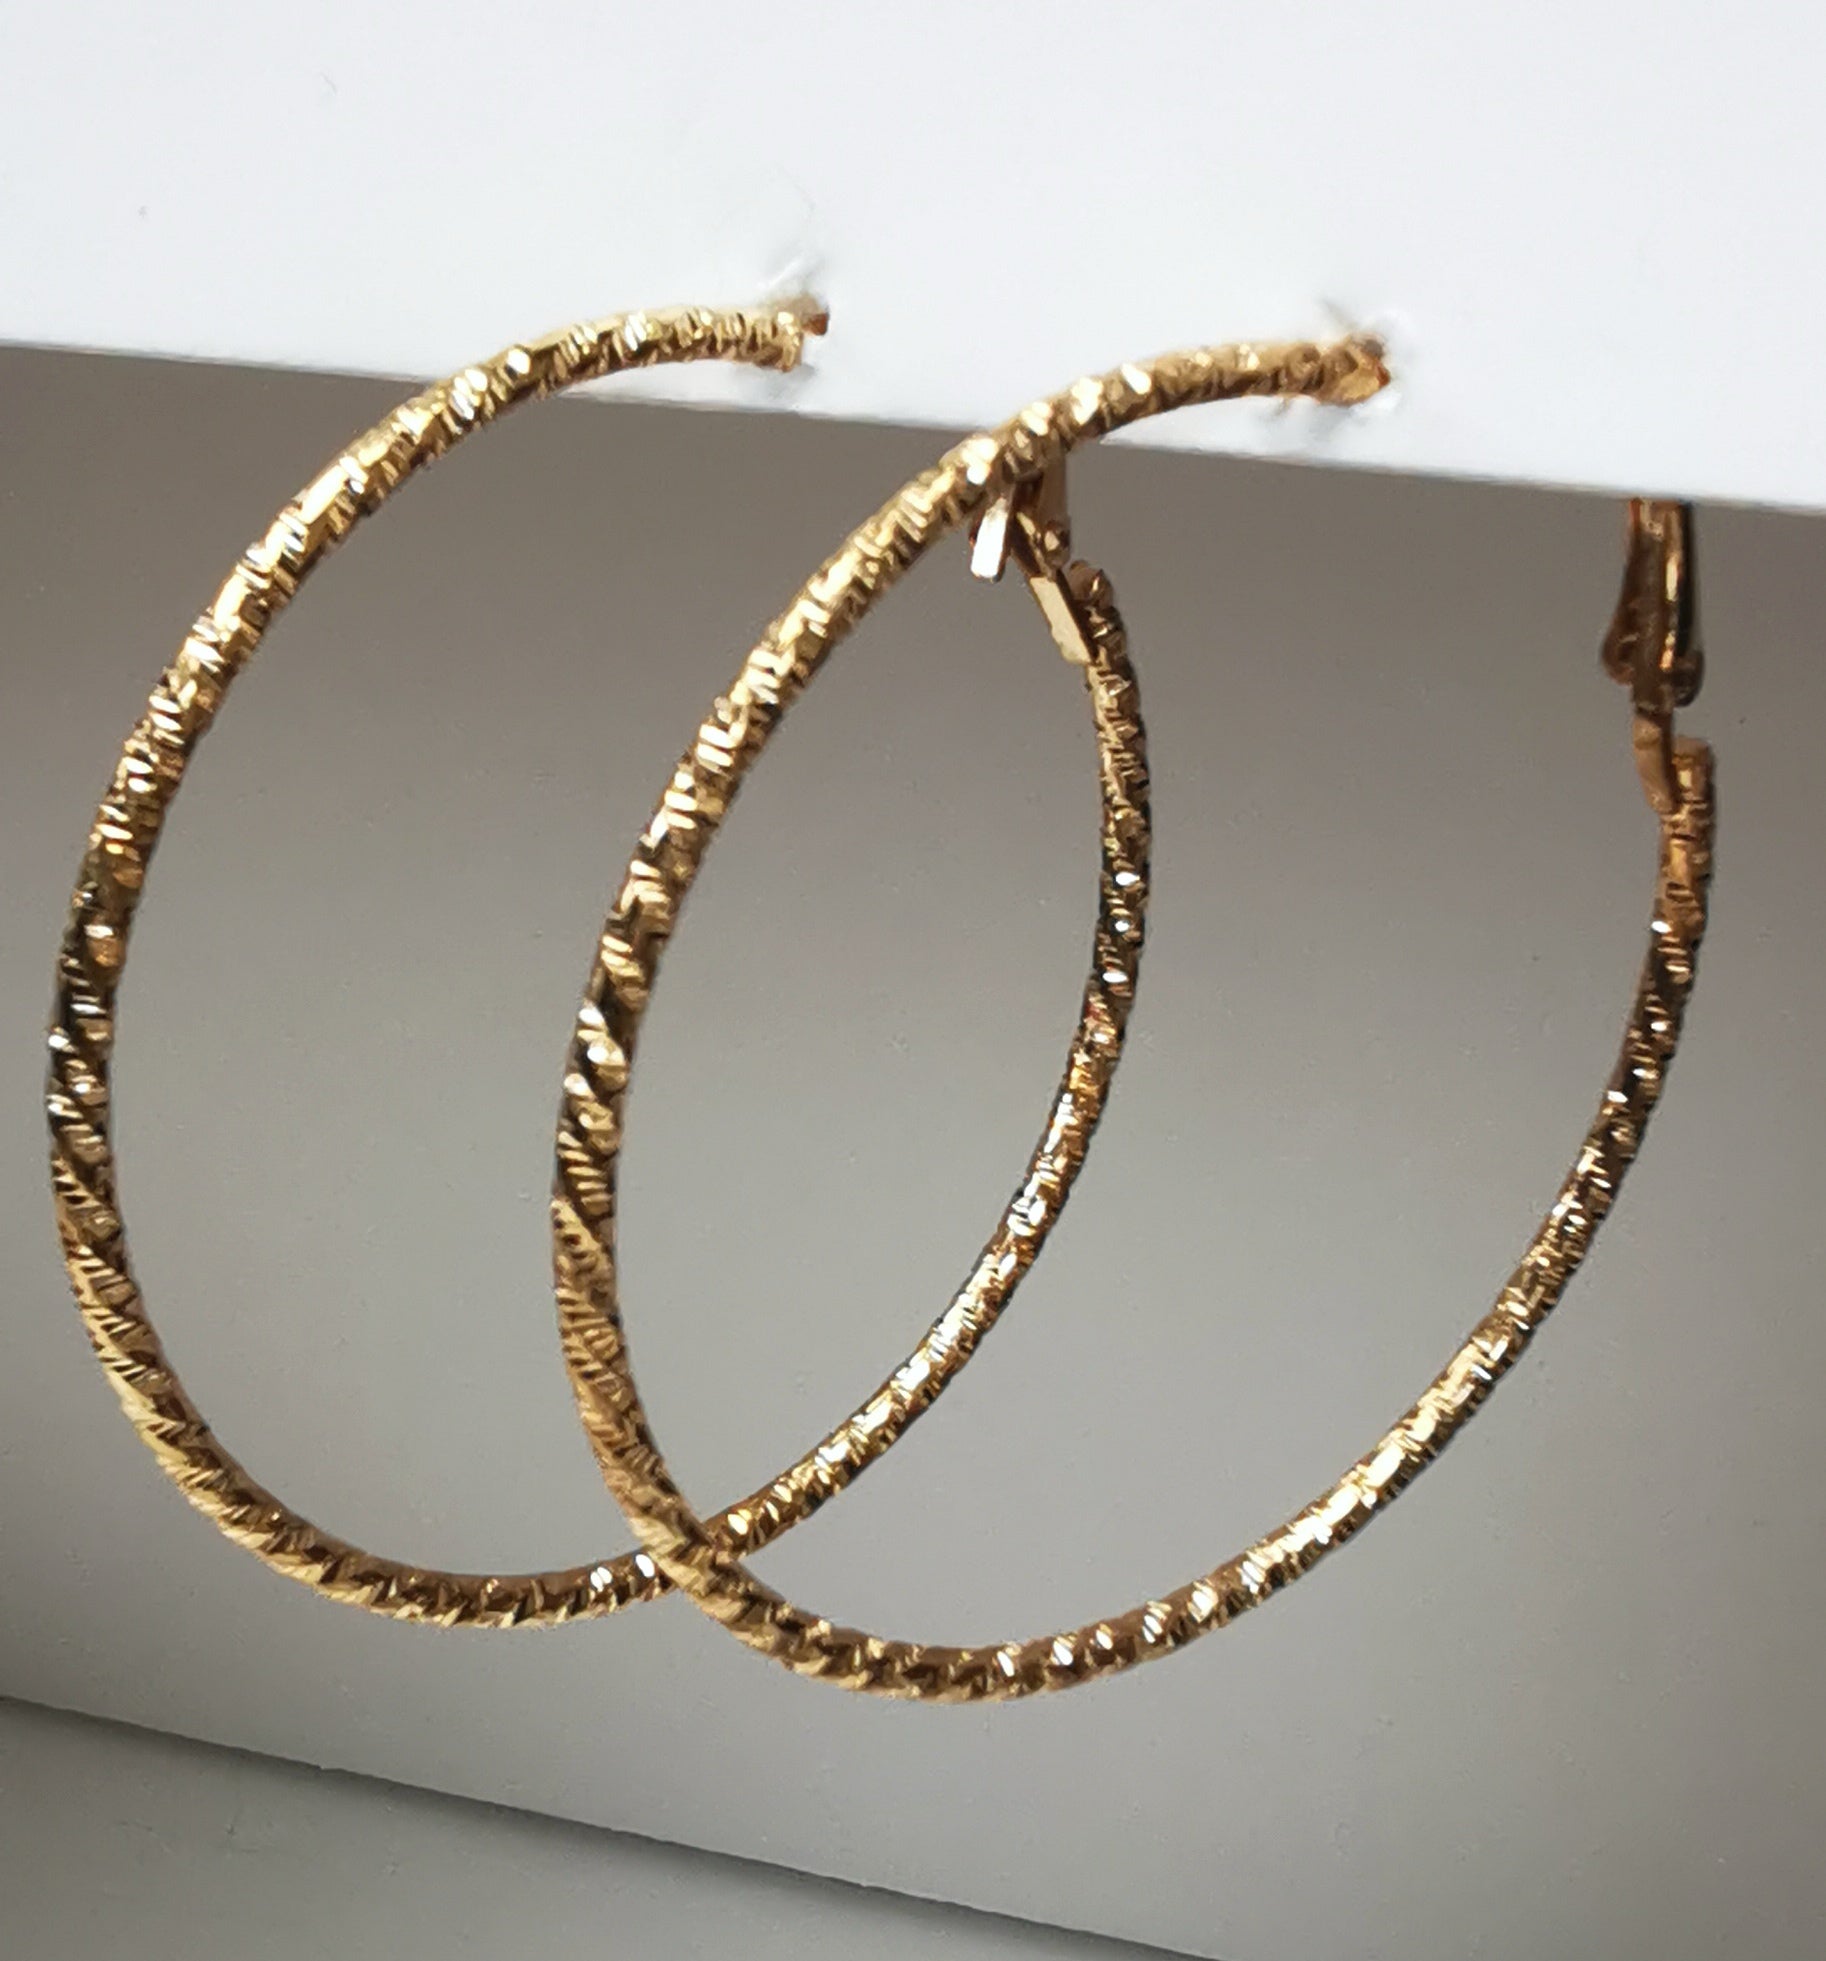 Boucles d'oreilles créoles dorées 50mm de diamètre, fil de 1.5mm, surface texturée. Accrochées sous un support, vue de droite en gros plan.